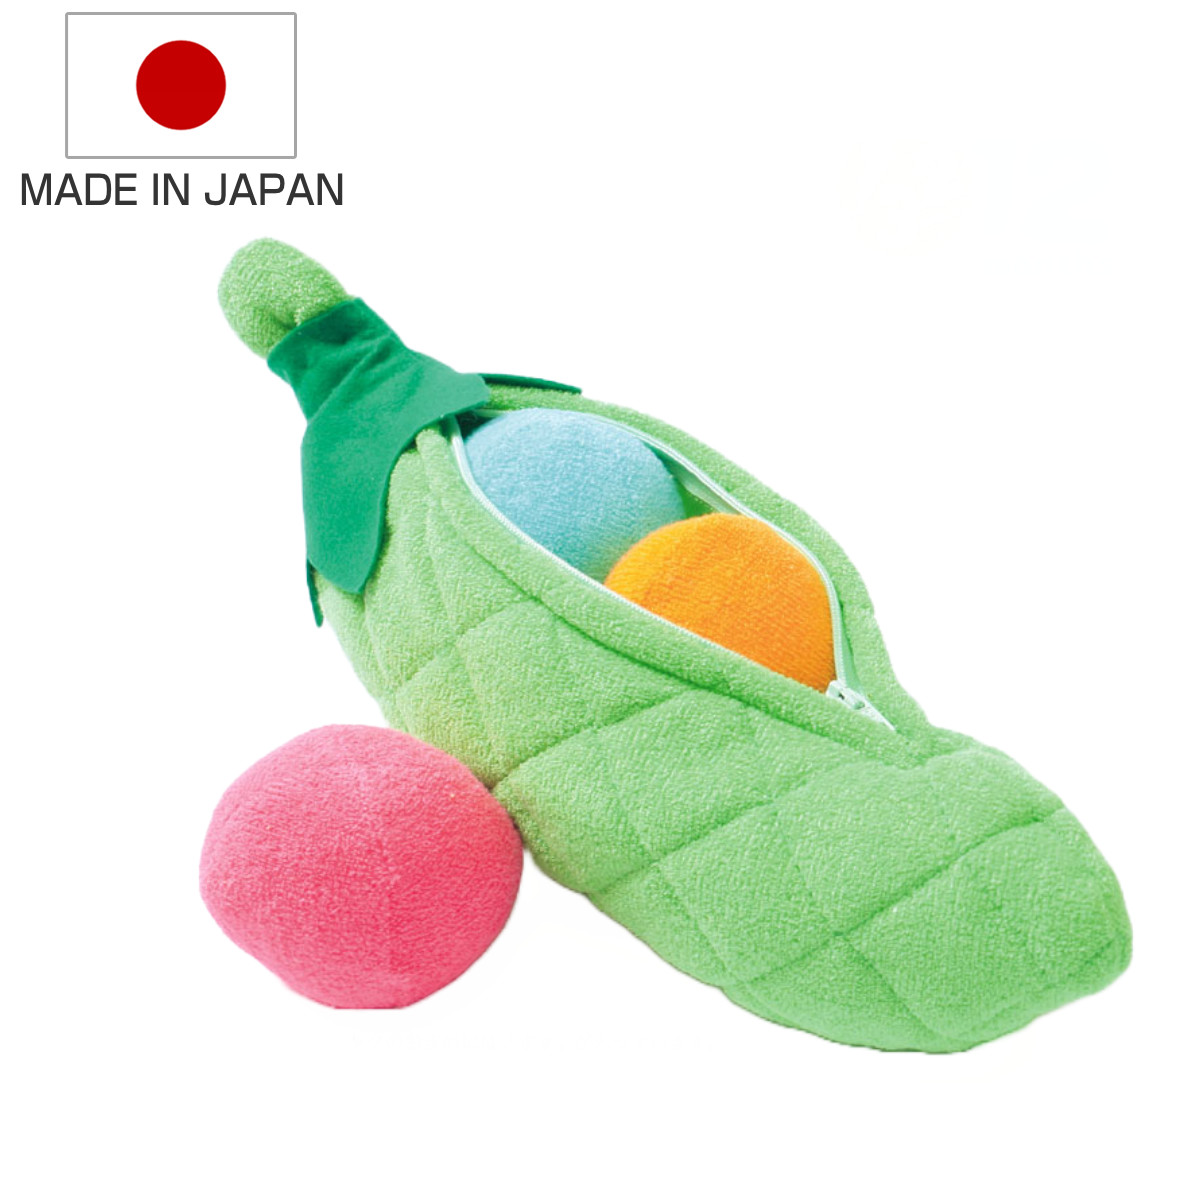 おもちゃ さやえんどう 小 知育 赤ちゃん 日本製 （ 綿100％ 知育玩具 玩具 ぬいぐるみ ふわふわ 子供 子ども ベビー 野菜 やさい ミニ  カラフル ソフト ハンドメイド かわいい 出産祝い 男の子 雑貨 インテリア ）